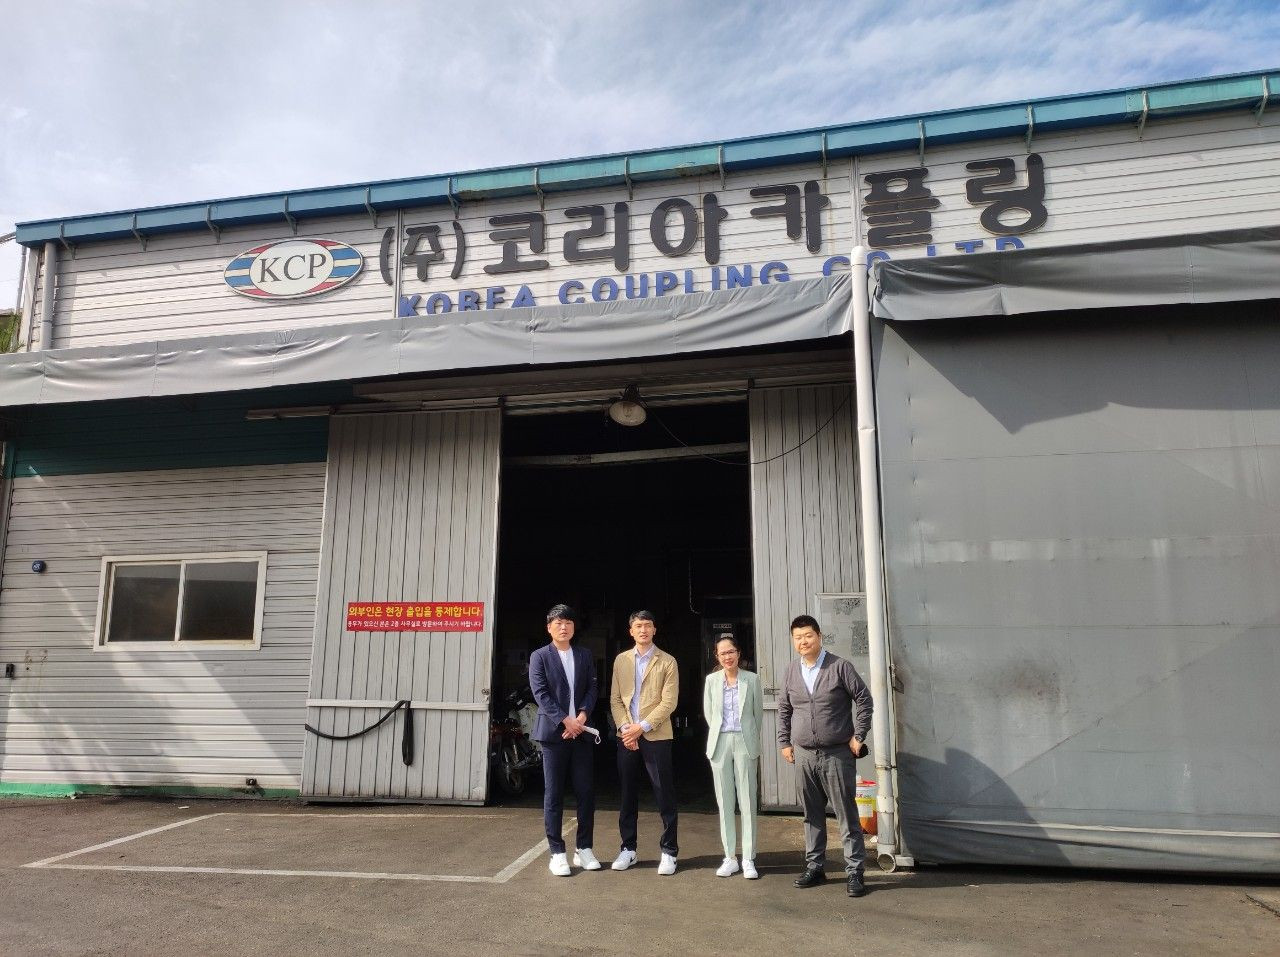 Kiên Dũng đến thăm nhà máy khớp nối KCP tại Hàn Quốc